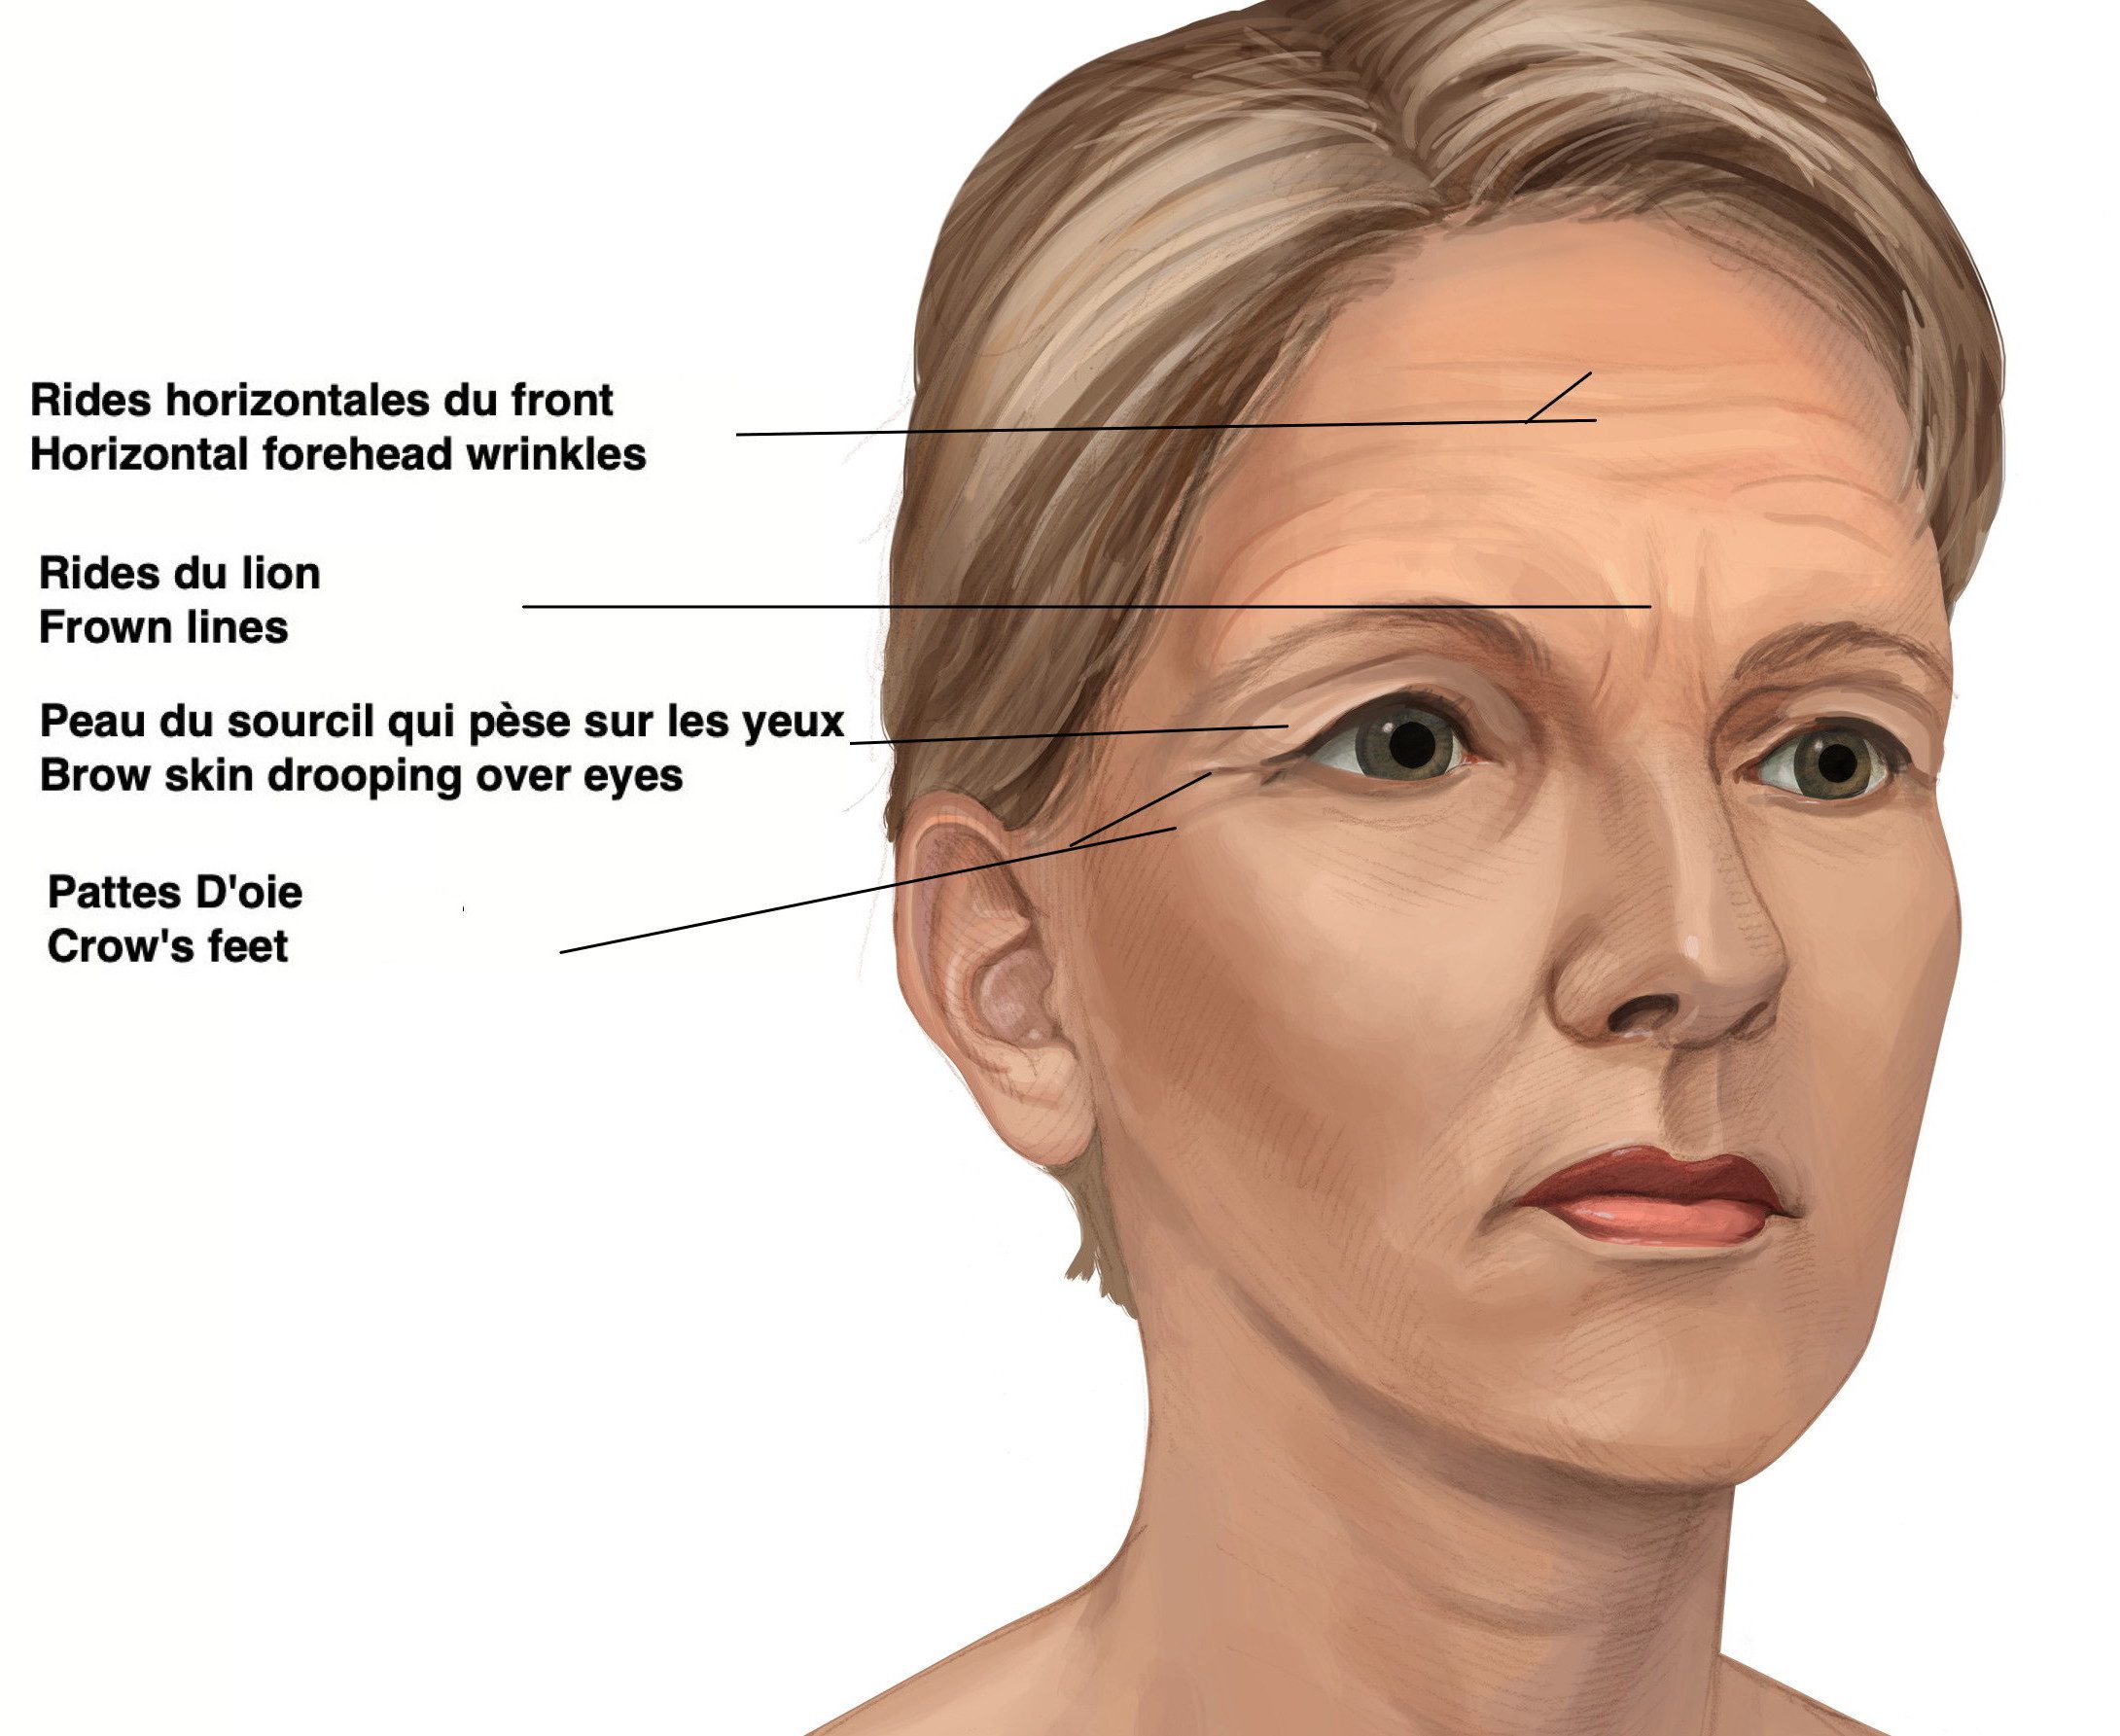 Image 2 (a) : Femme plus âgée avec des changements dus au vieillissement du sourcil. Le sourcil a perdu son arche. Il est plus horizontal, positionné plus bas sur l’os de la cavité orbitaire. L’excès de peau pend par-dessus l’œil et il y a des rides sur le front.